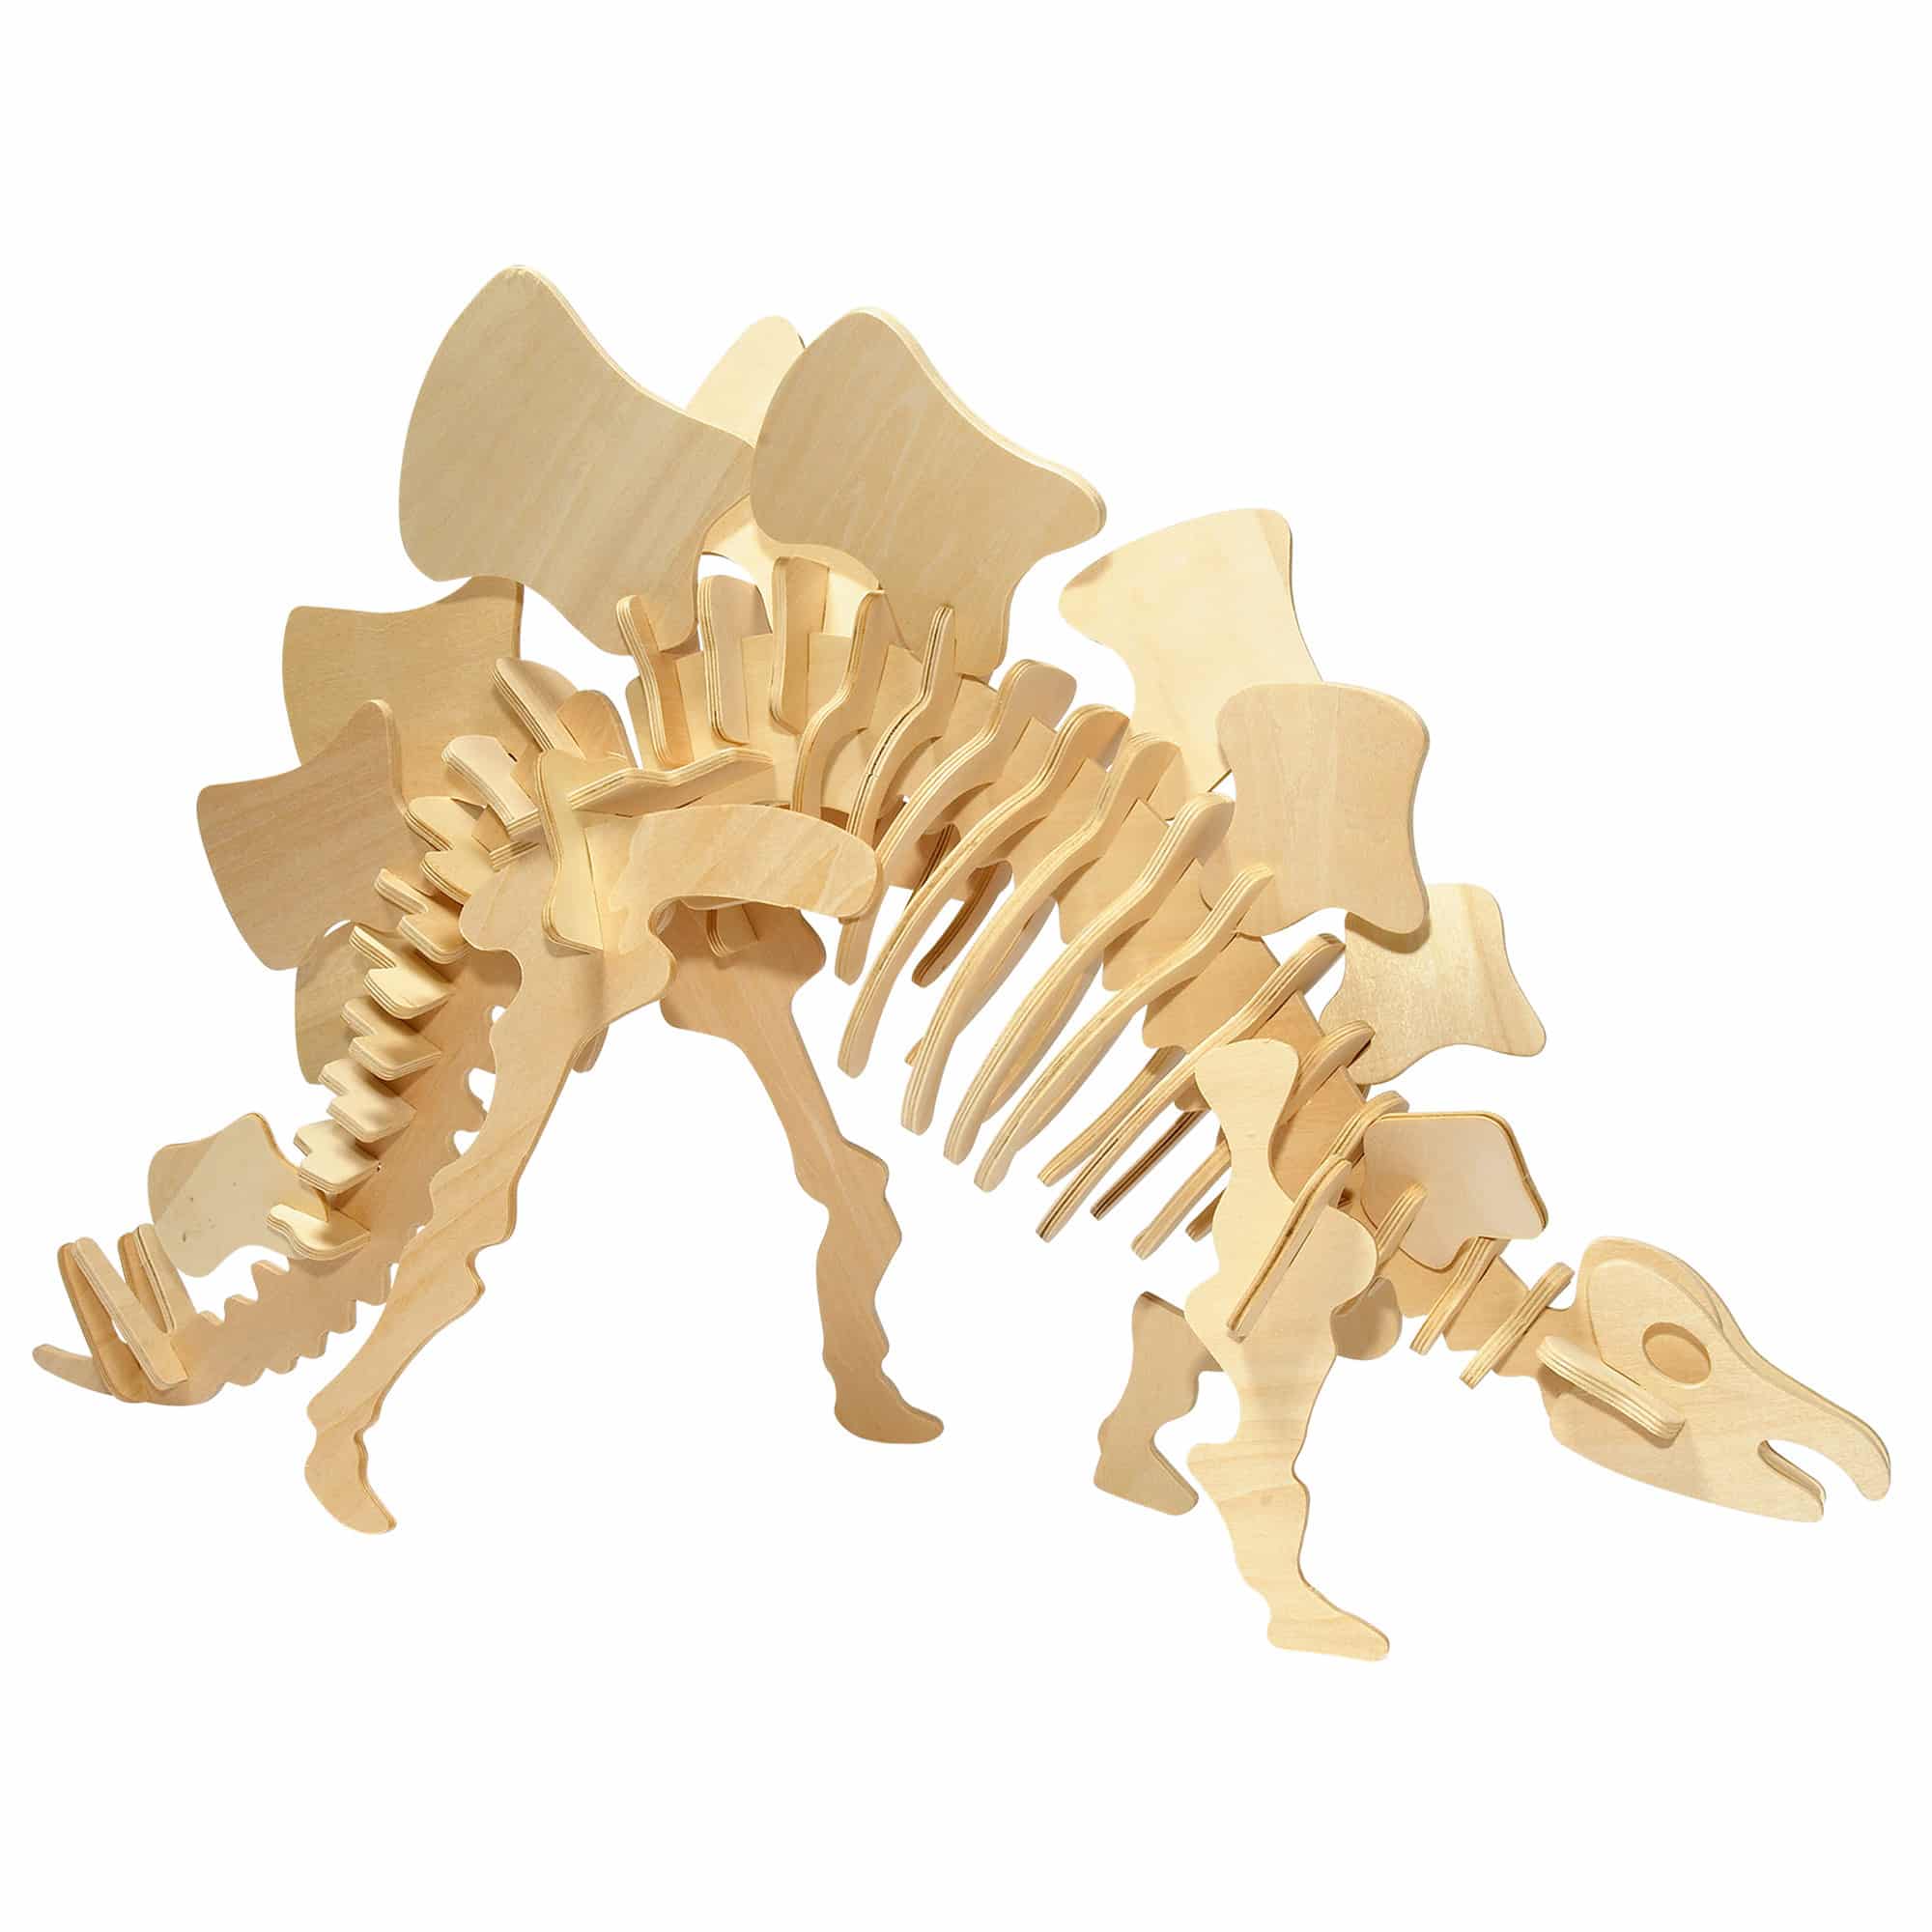 Dinosaur Skeleton Kit - 70cm Wooden Stegosaurus